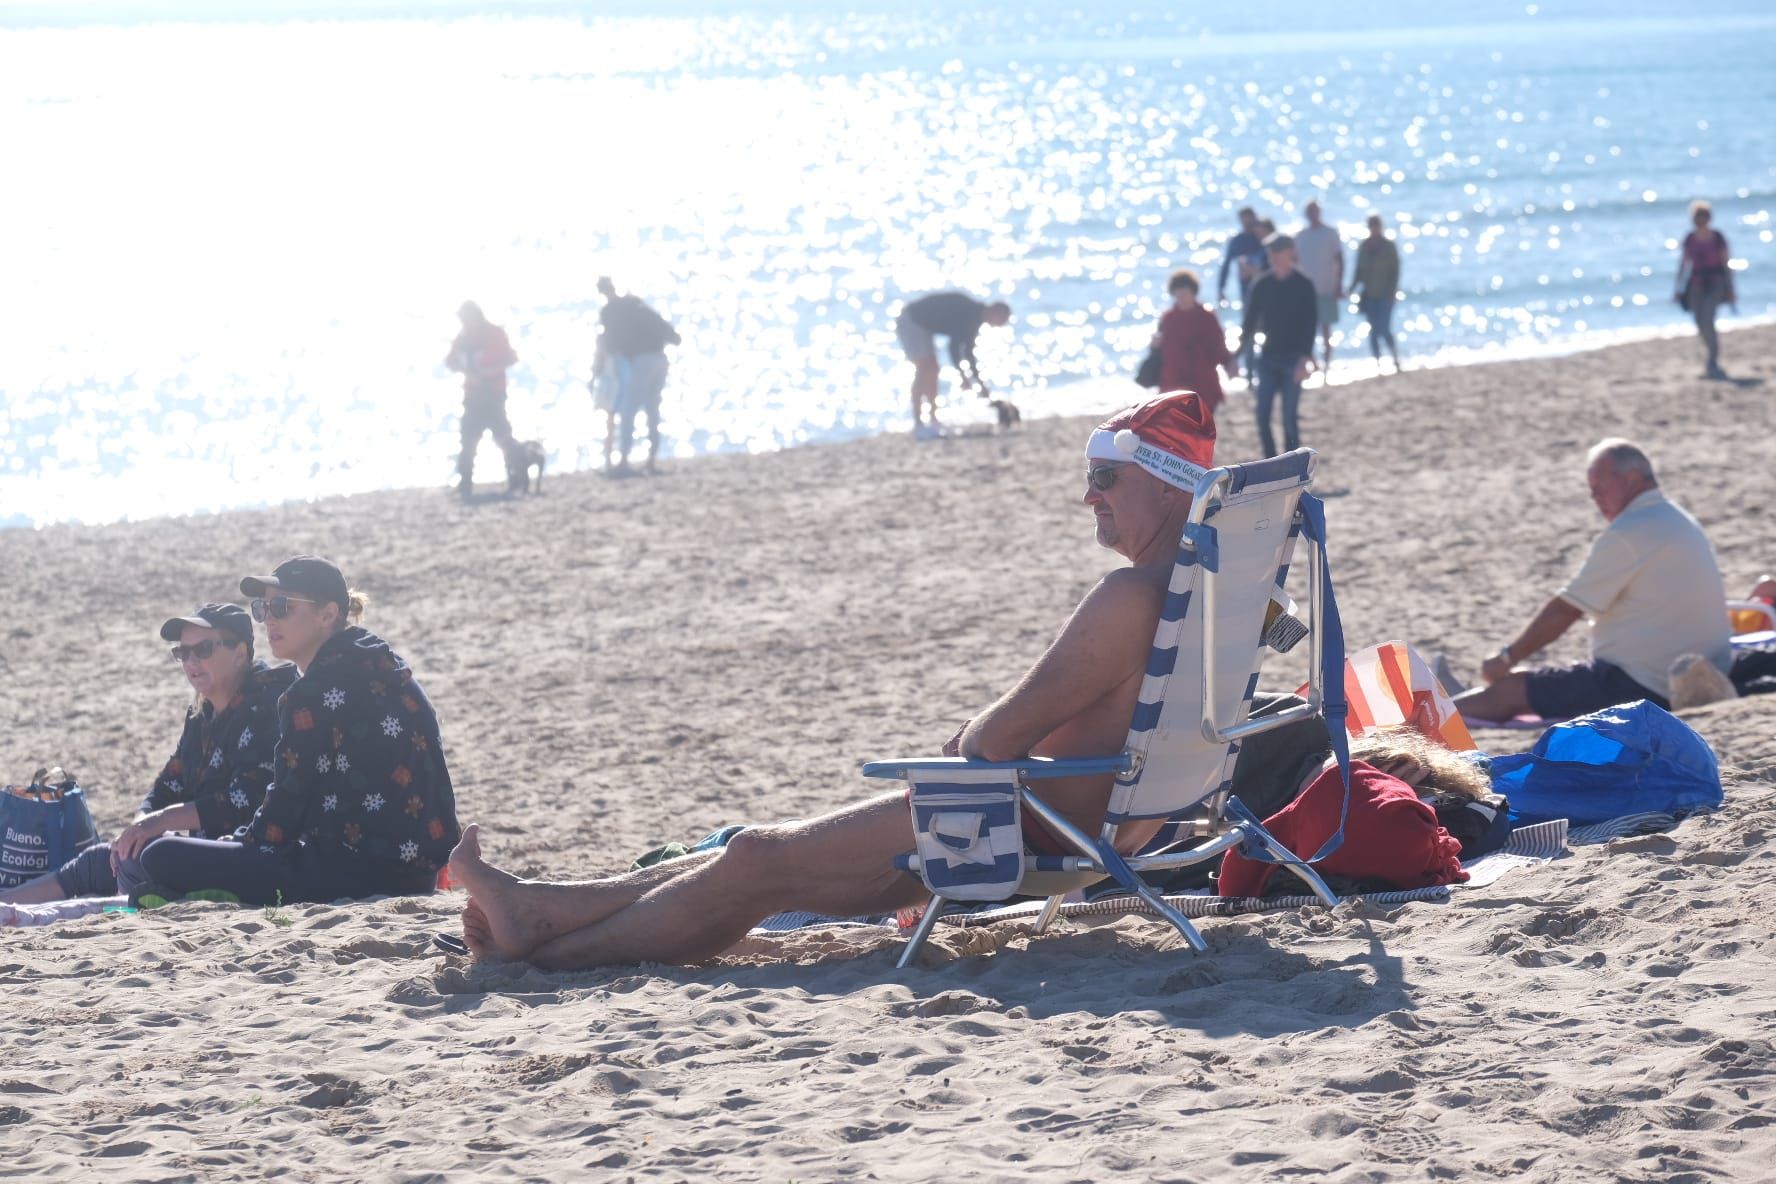 El día de Navidad en manga corta y en la playa en la provincia